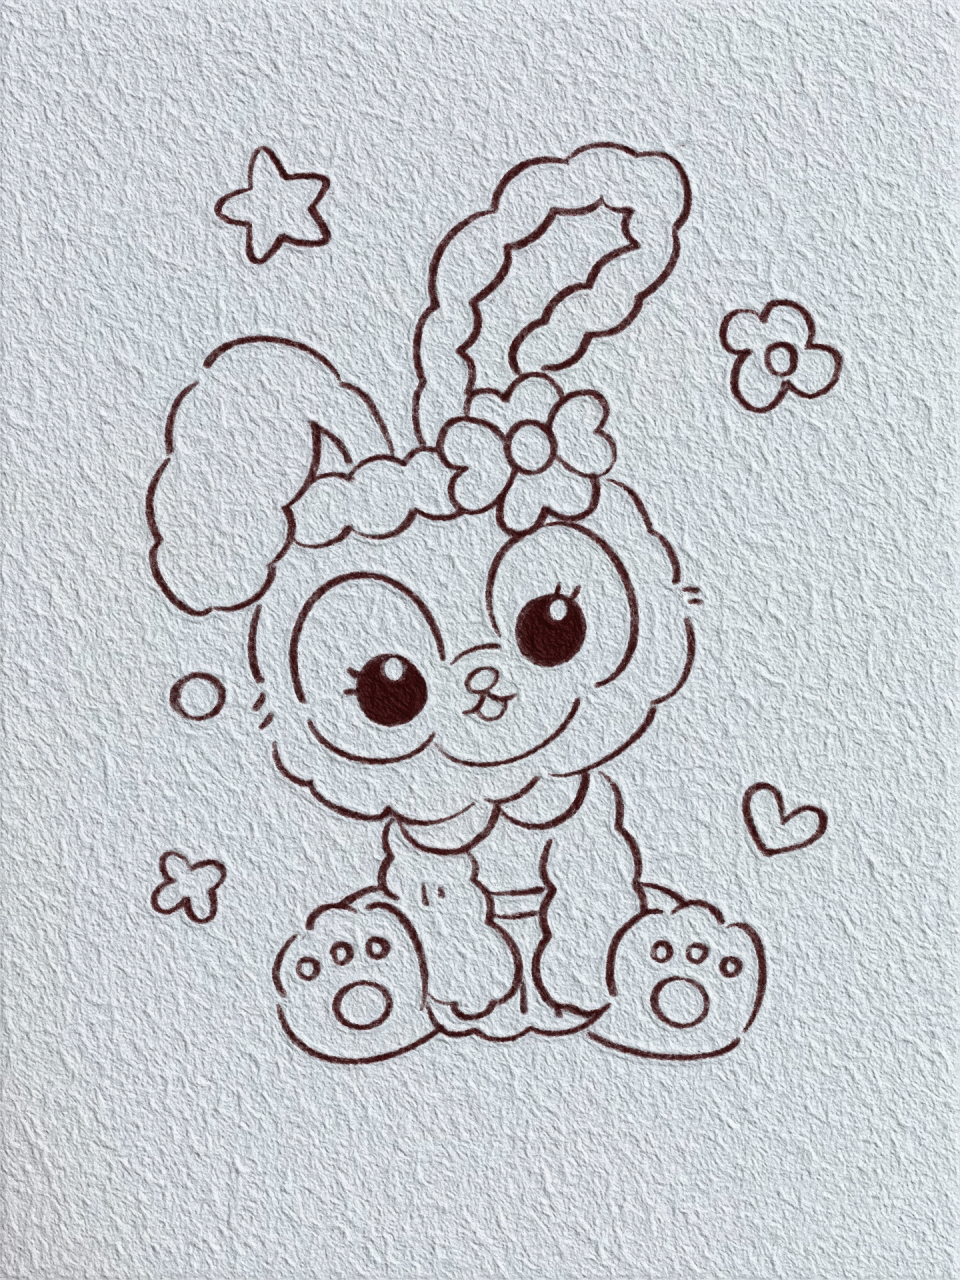 星黛露的简笔画兔子图片